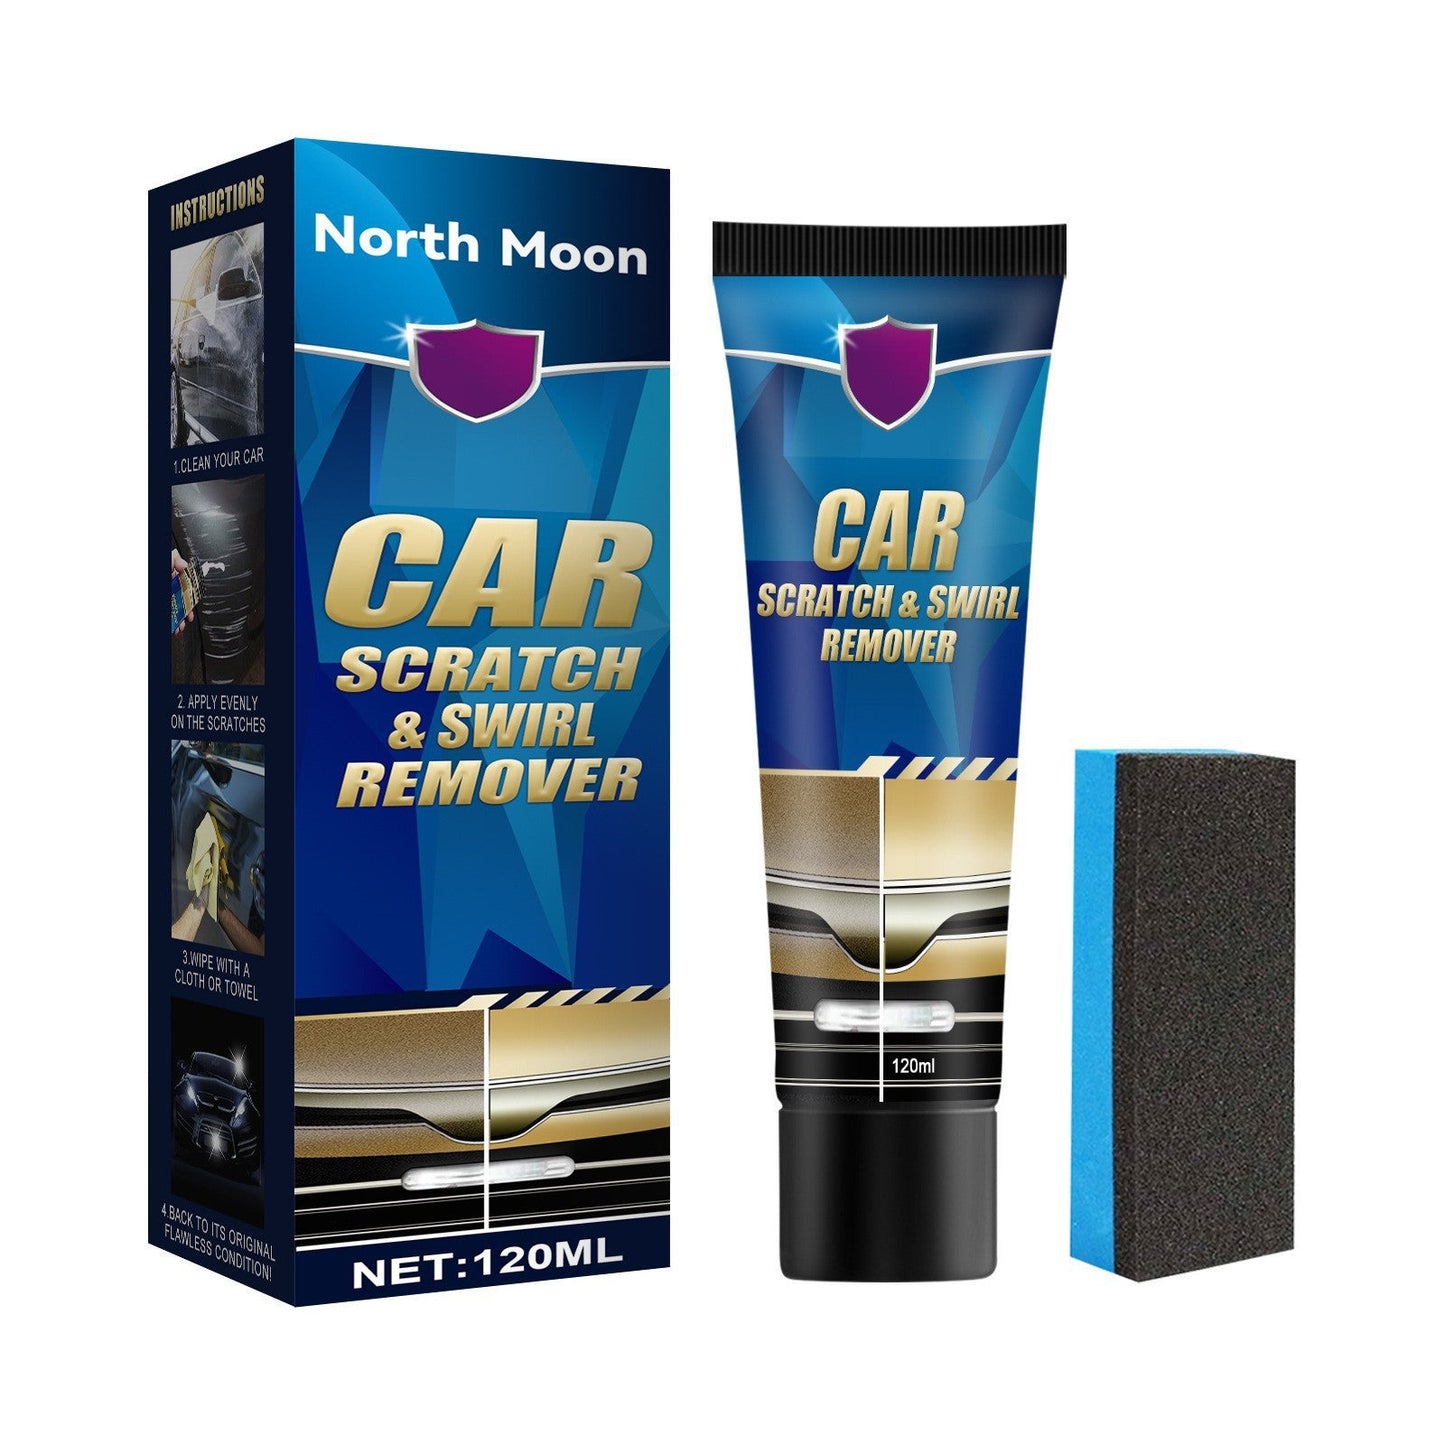 Car scratch repair cream, lacquer surface scratch maintenance, scratch free care wax set